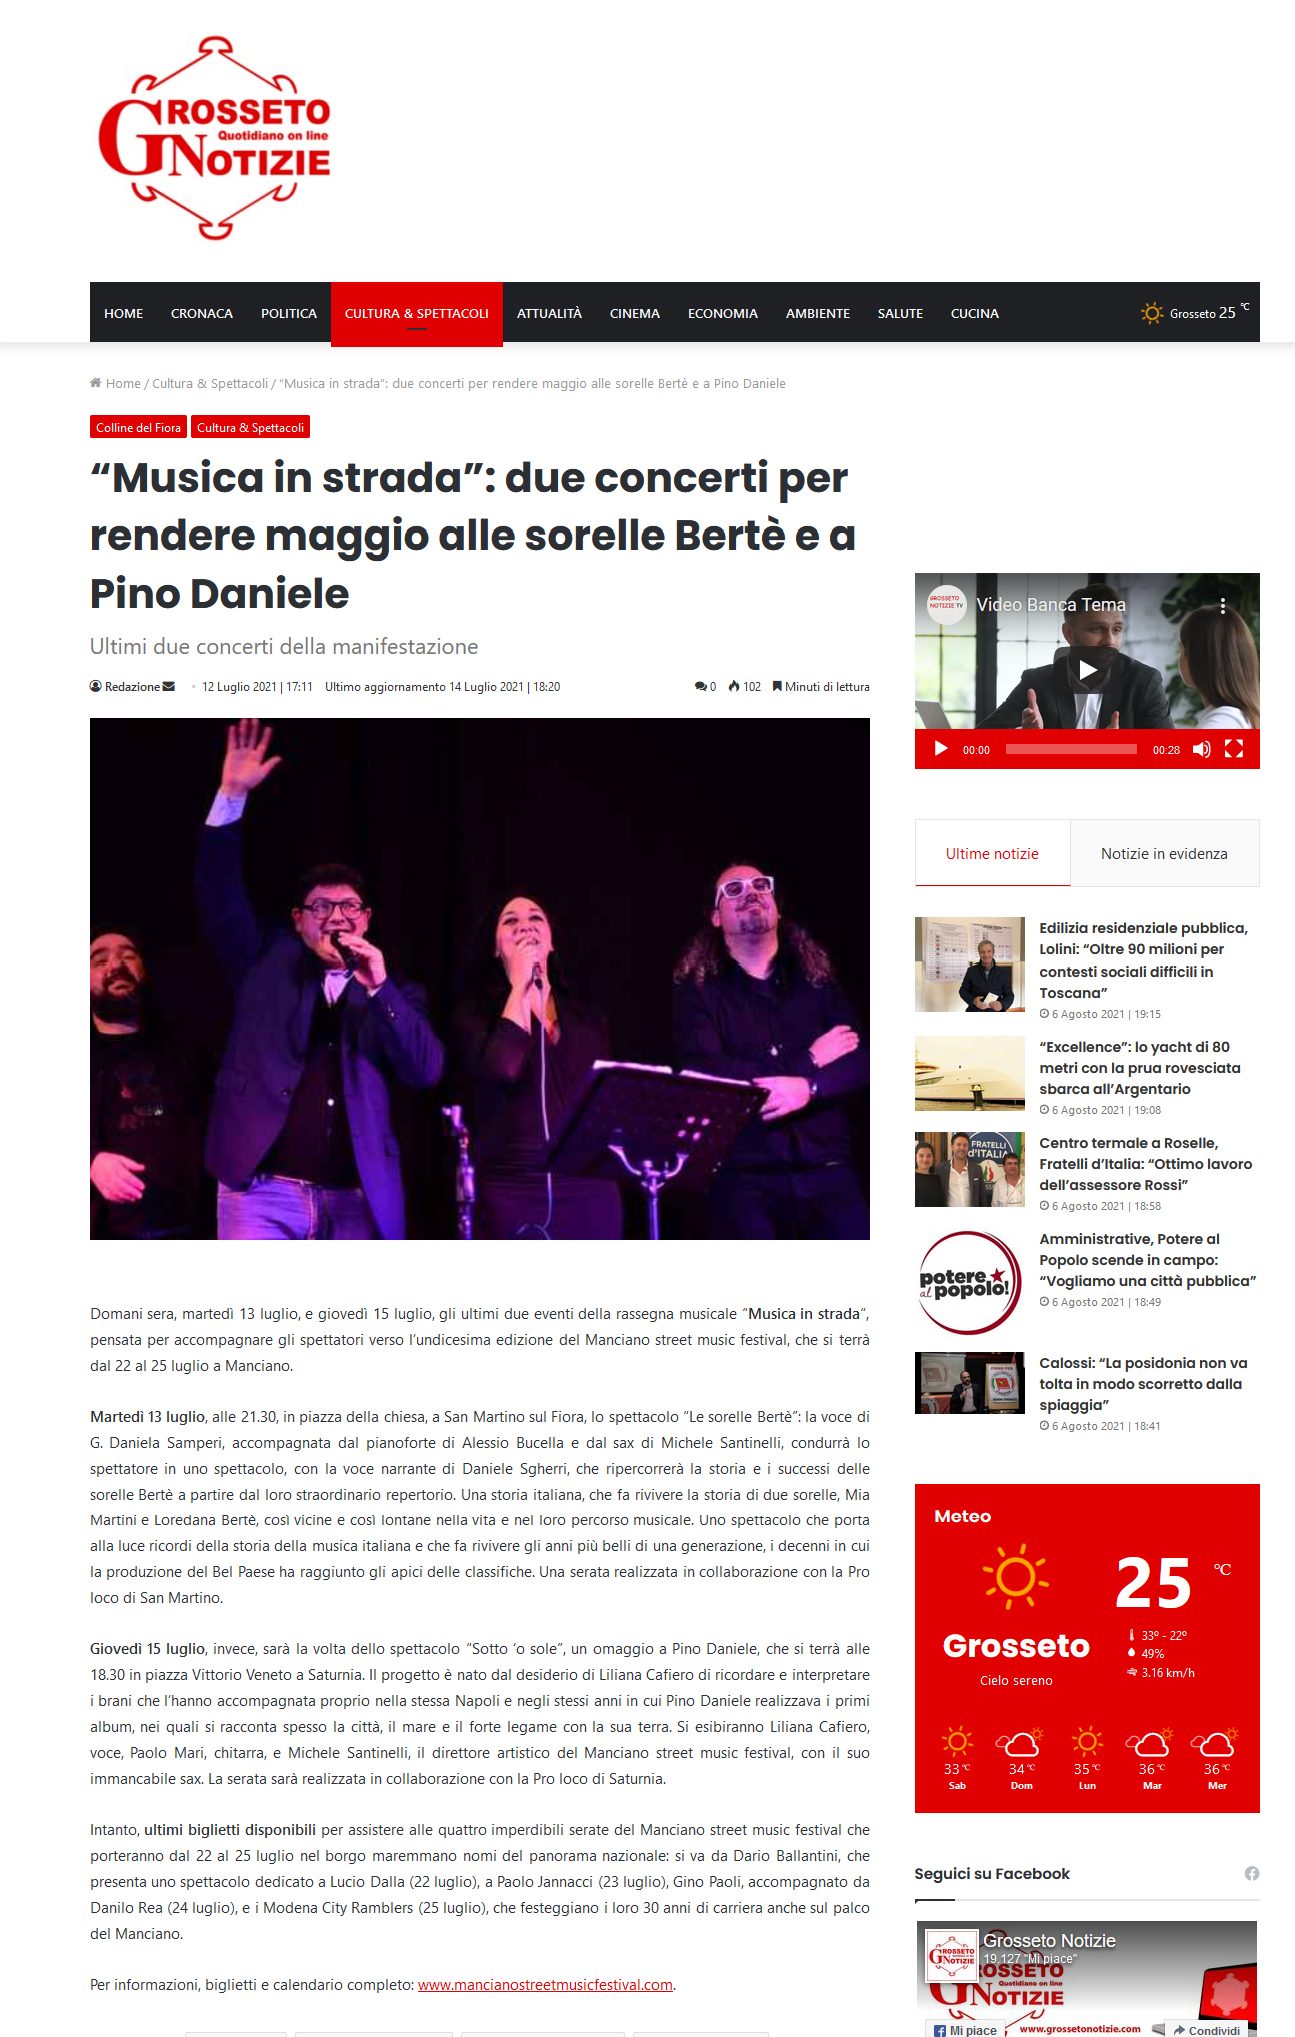 “Musica in strada”: due concerti per rendere omaggio alle sorelle Bertè e a Pino Daniele